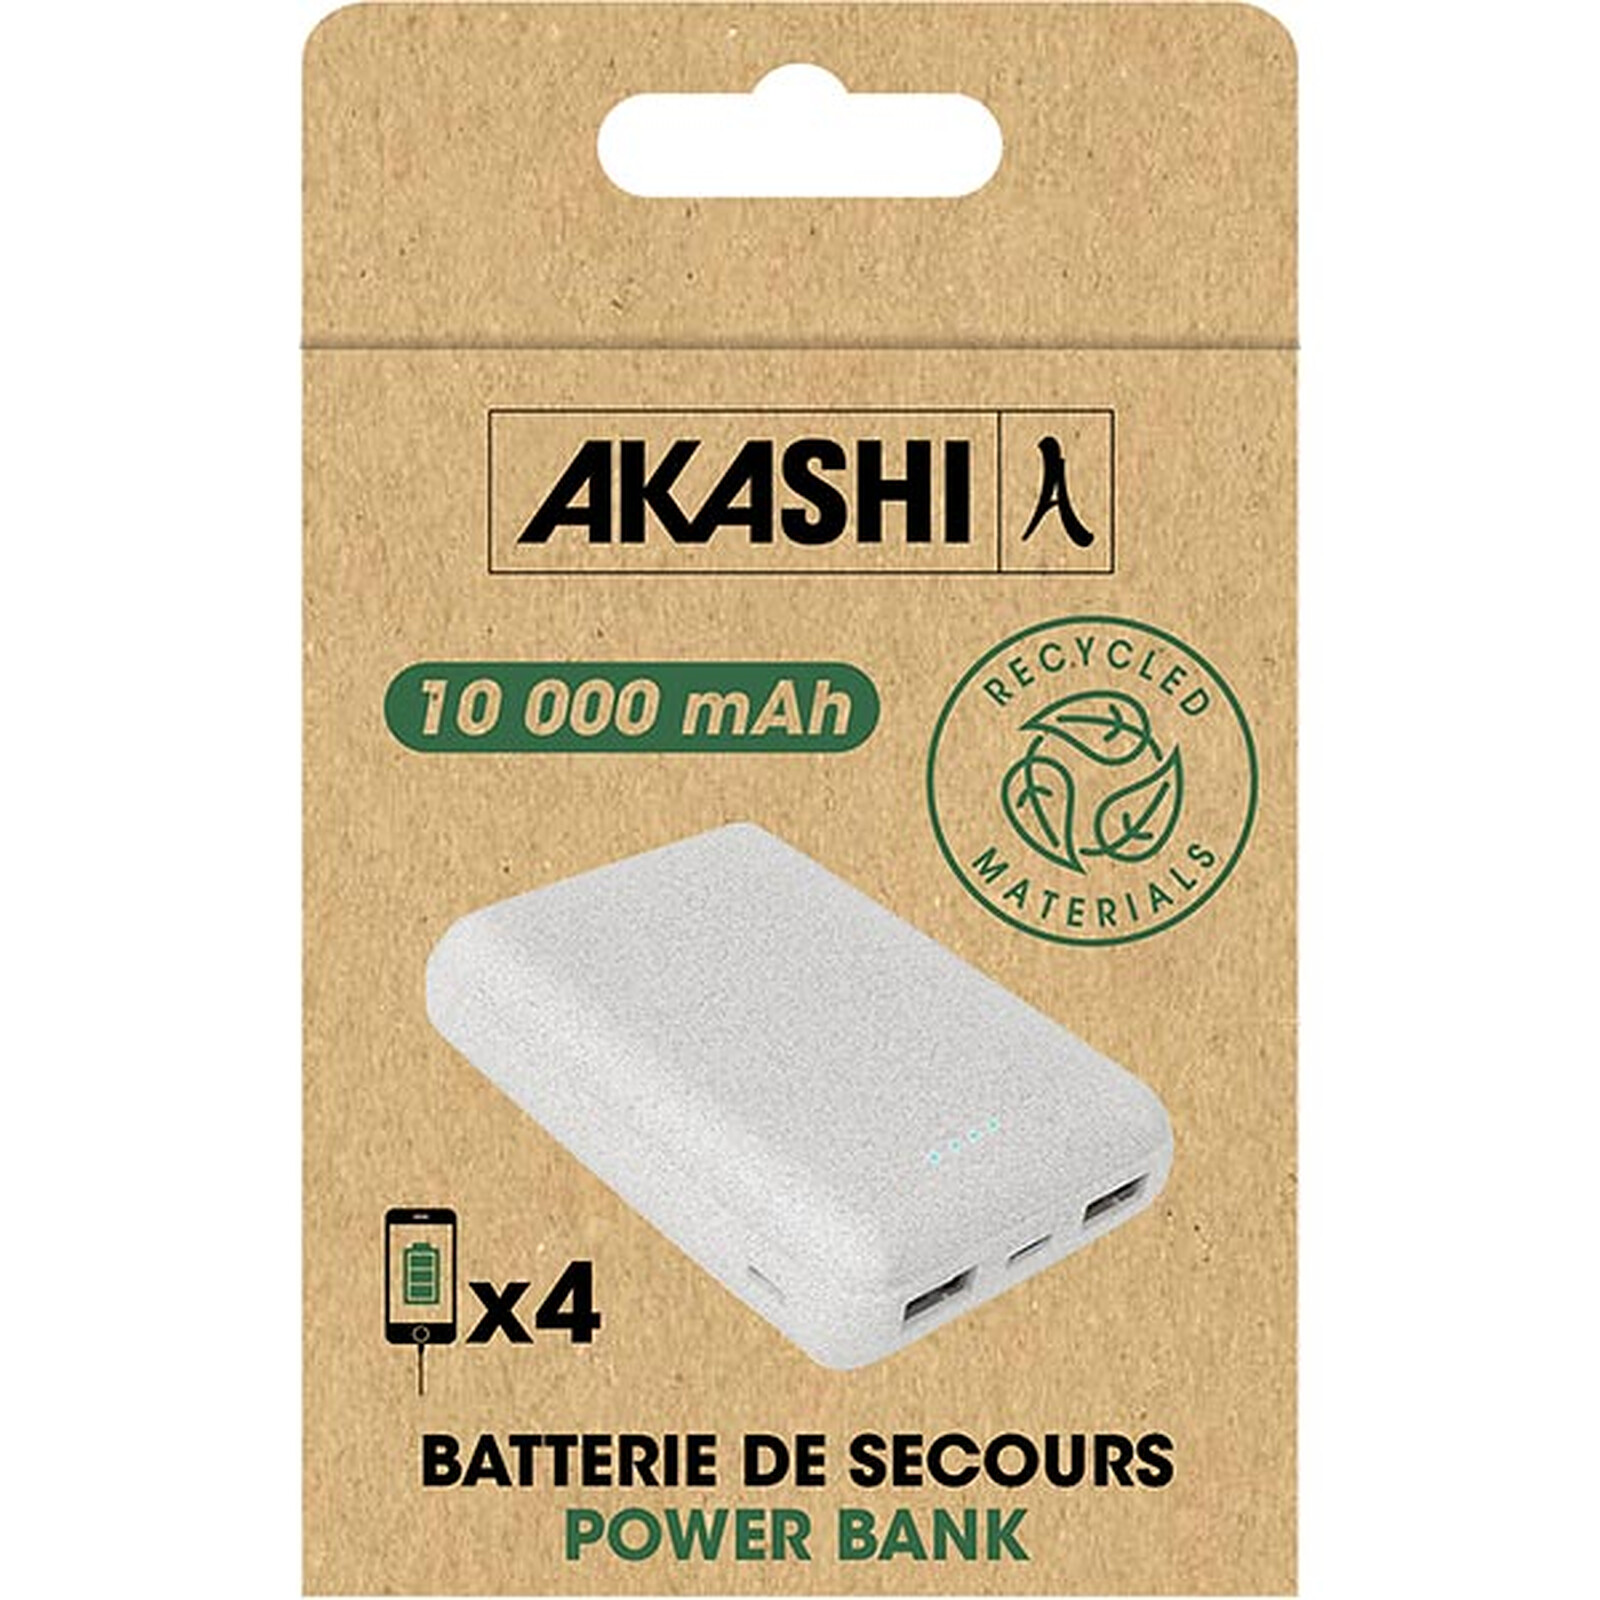 Akashi Batterie de Secours 10000 mAh Eco (Blanc) - Batterie